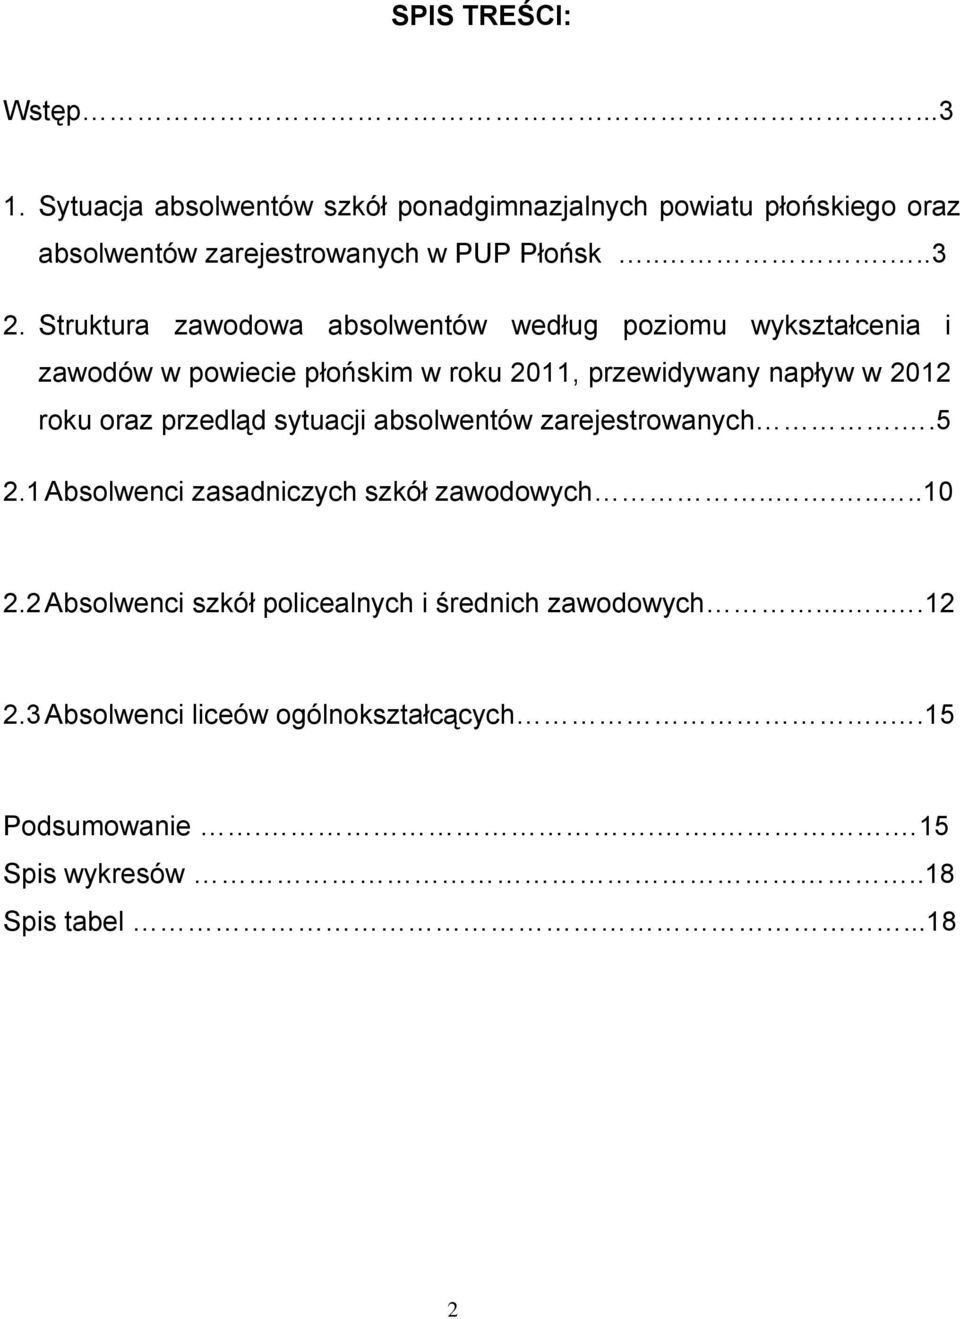 Struktura zawodowa absolwentów według poziomu wykształcenia i zawodów w powiecie płońskim w roku 2011, przewidywany napływ w 2012 roku oraz